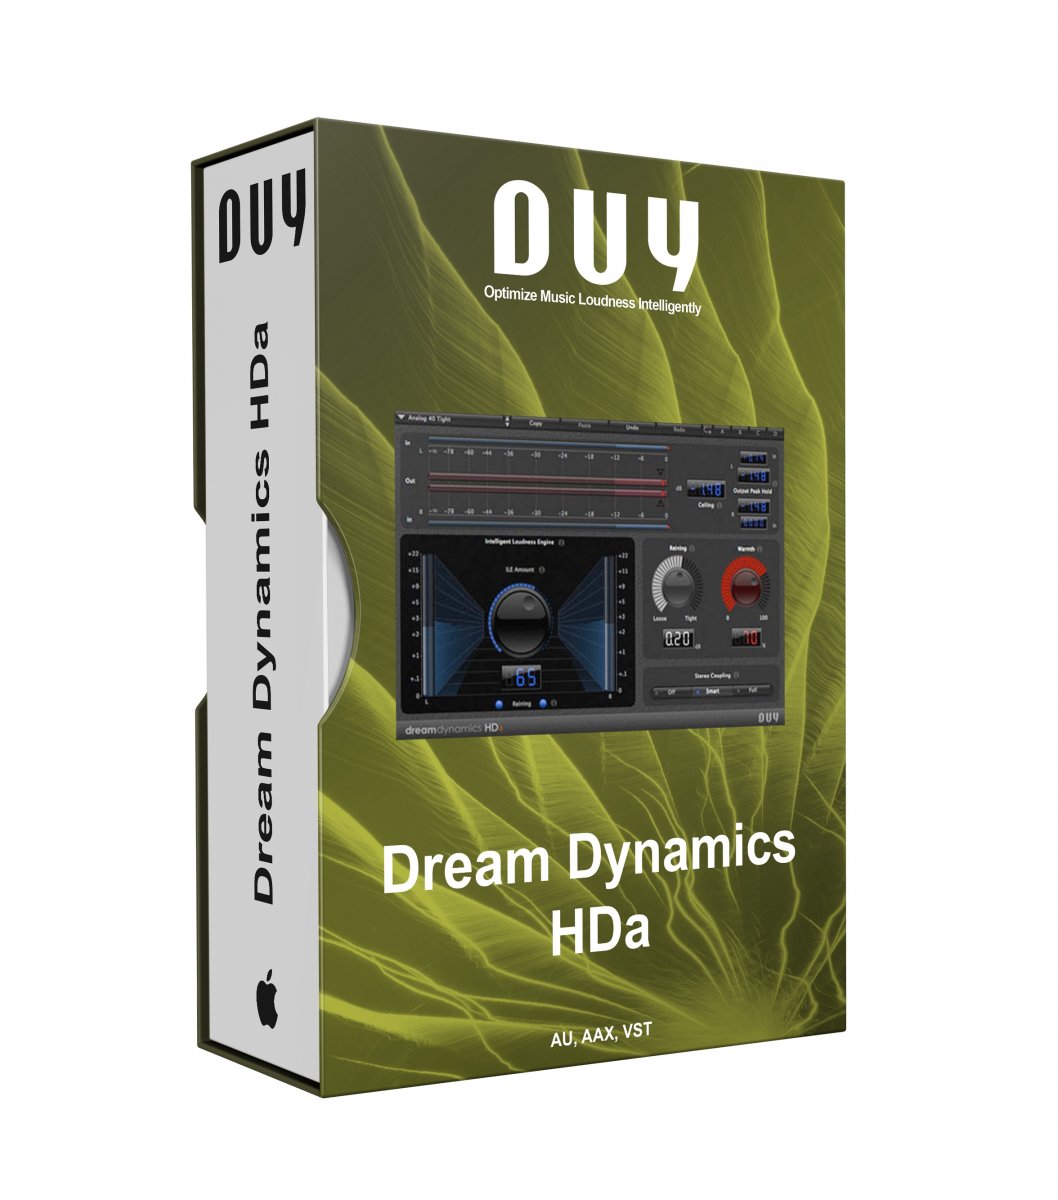 DUY Dream Dynamics HDa